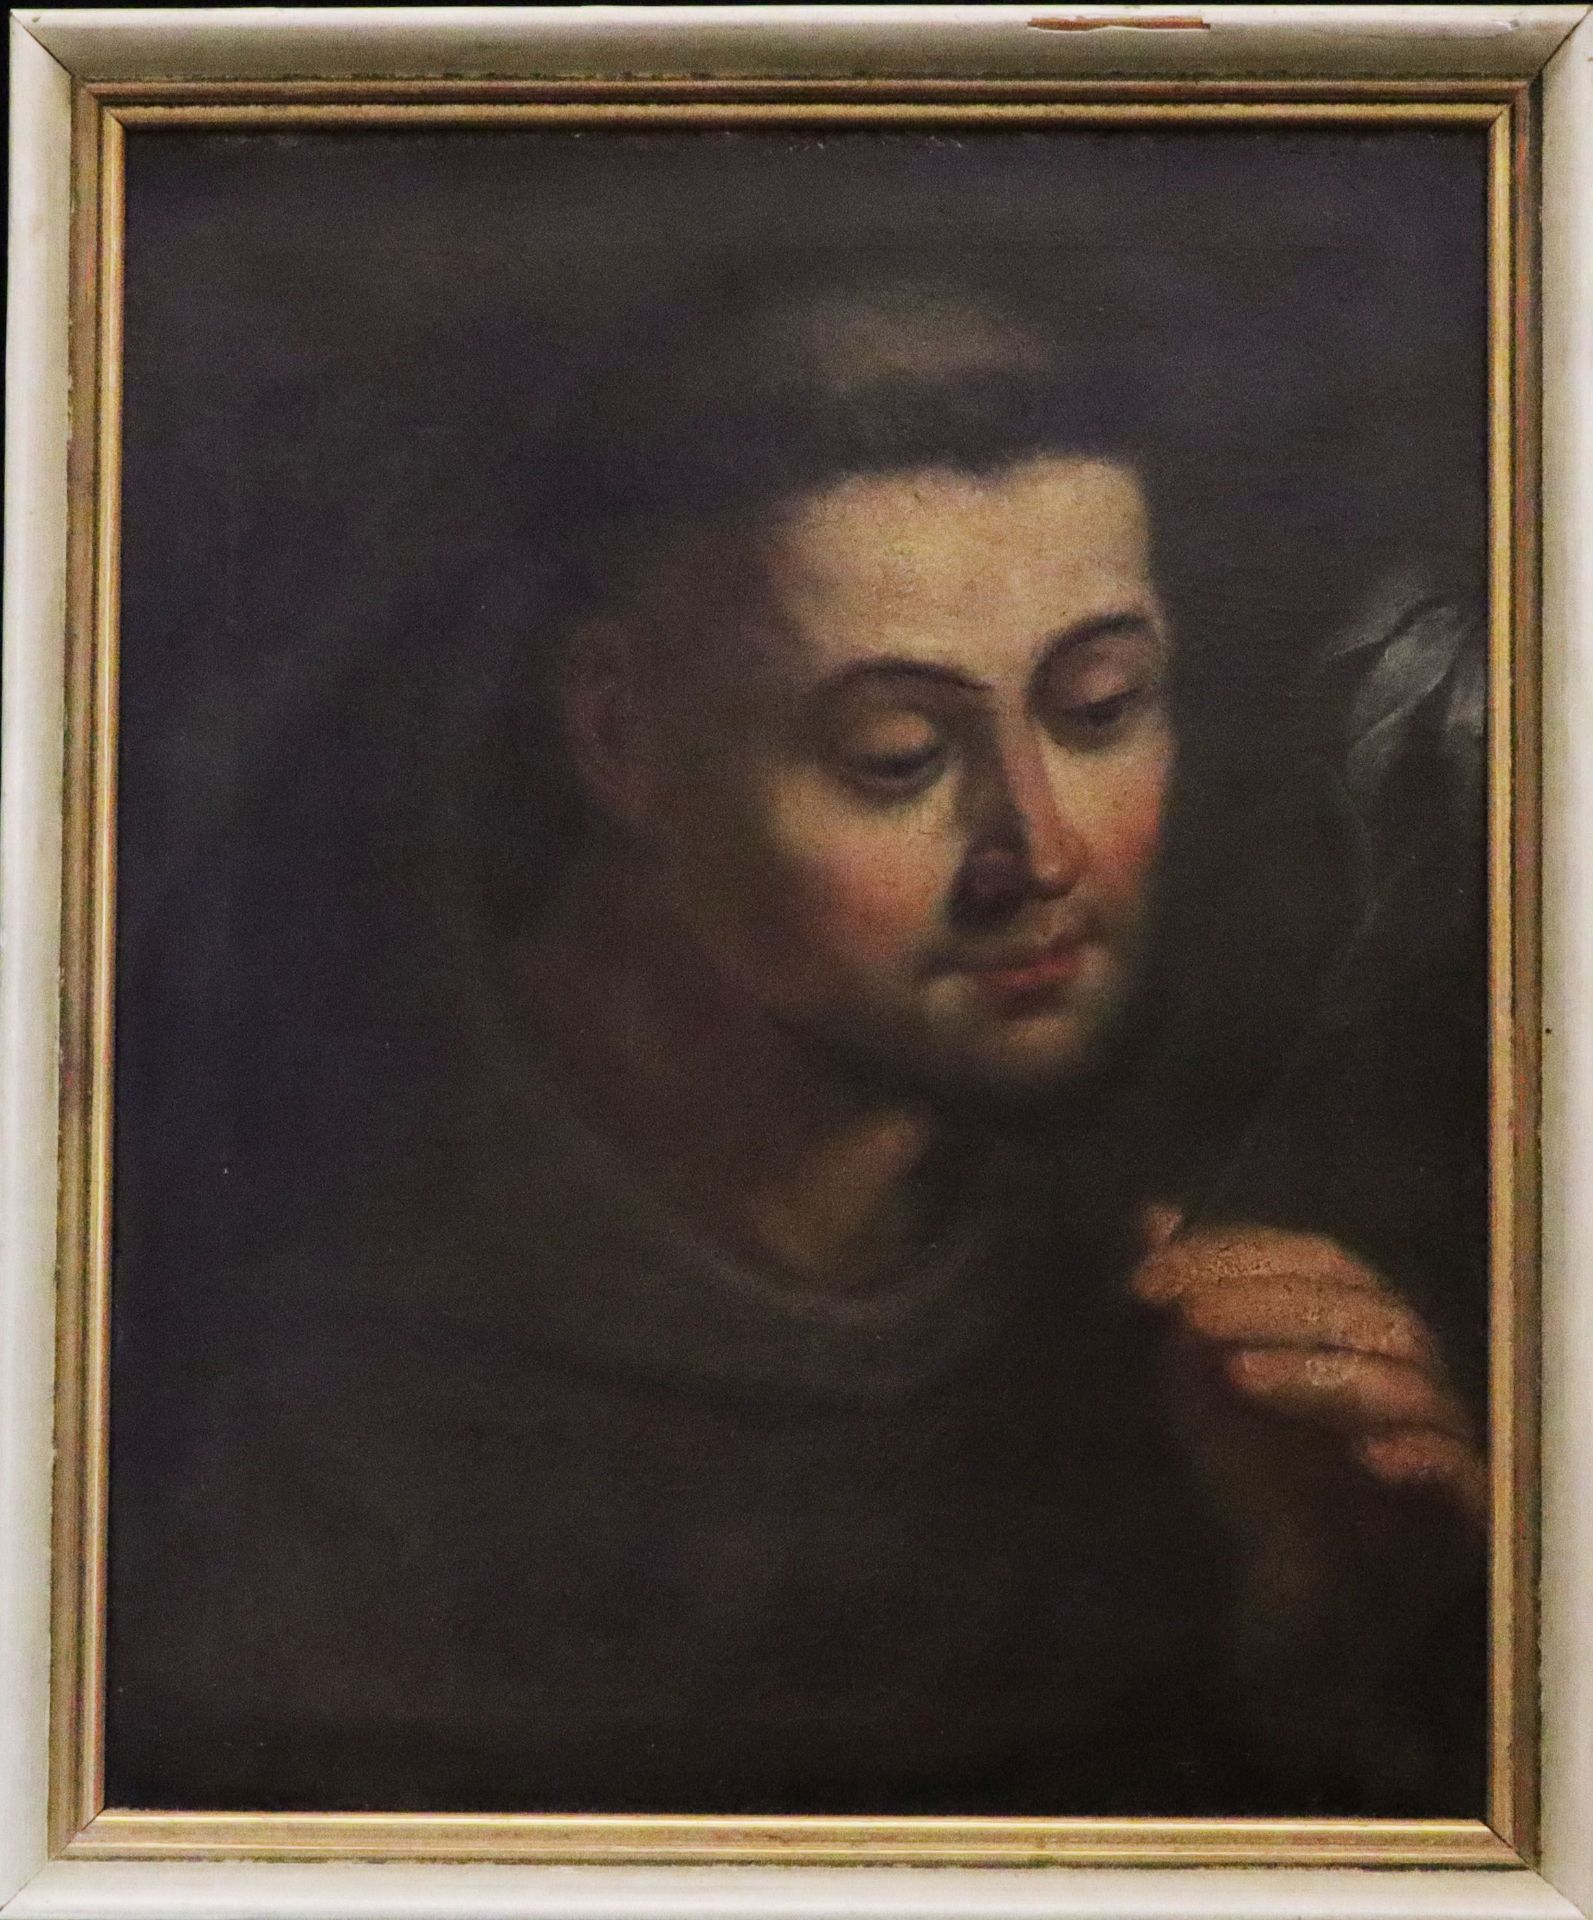 Unbekannter Maler, 18./19.Jh., Hl. Franziskus auf eine weiße Lilie in seiner Hand blickend, Öl/